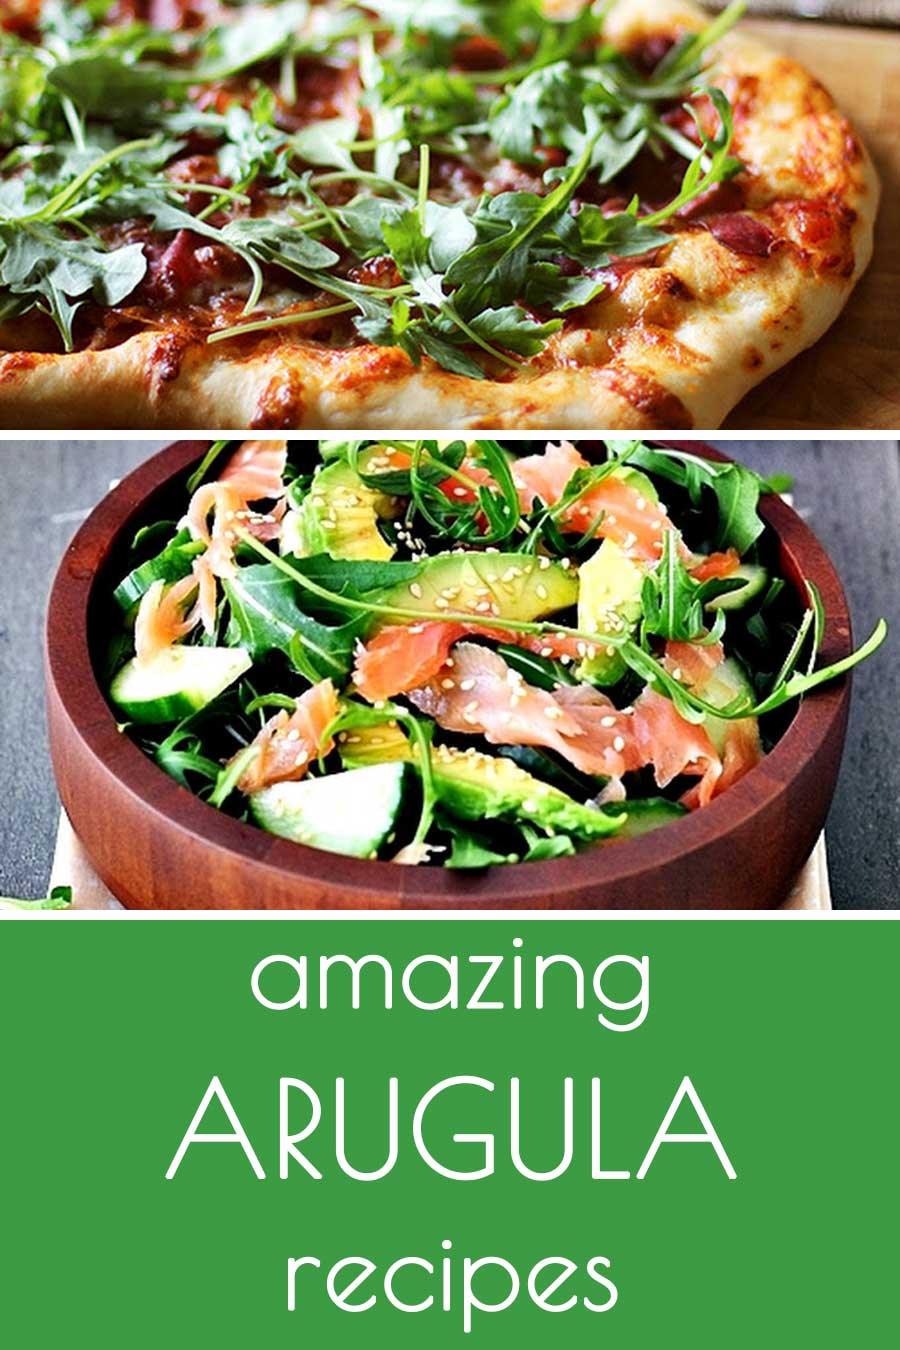 22 amazing arugula recipes